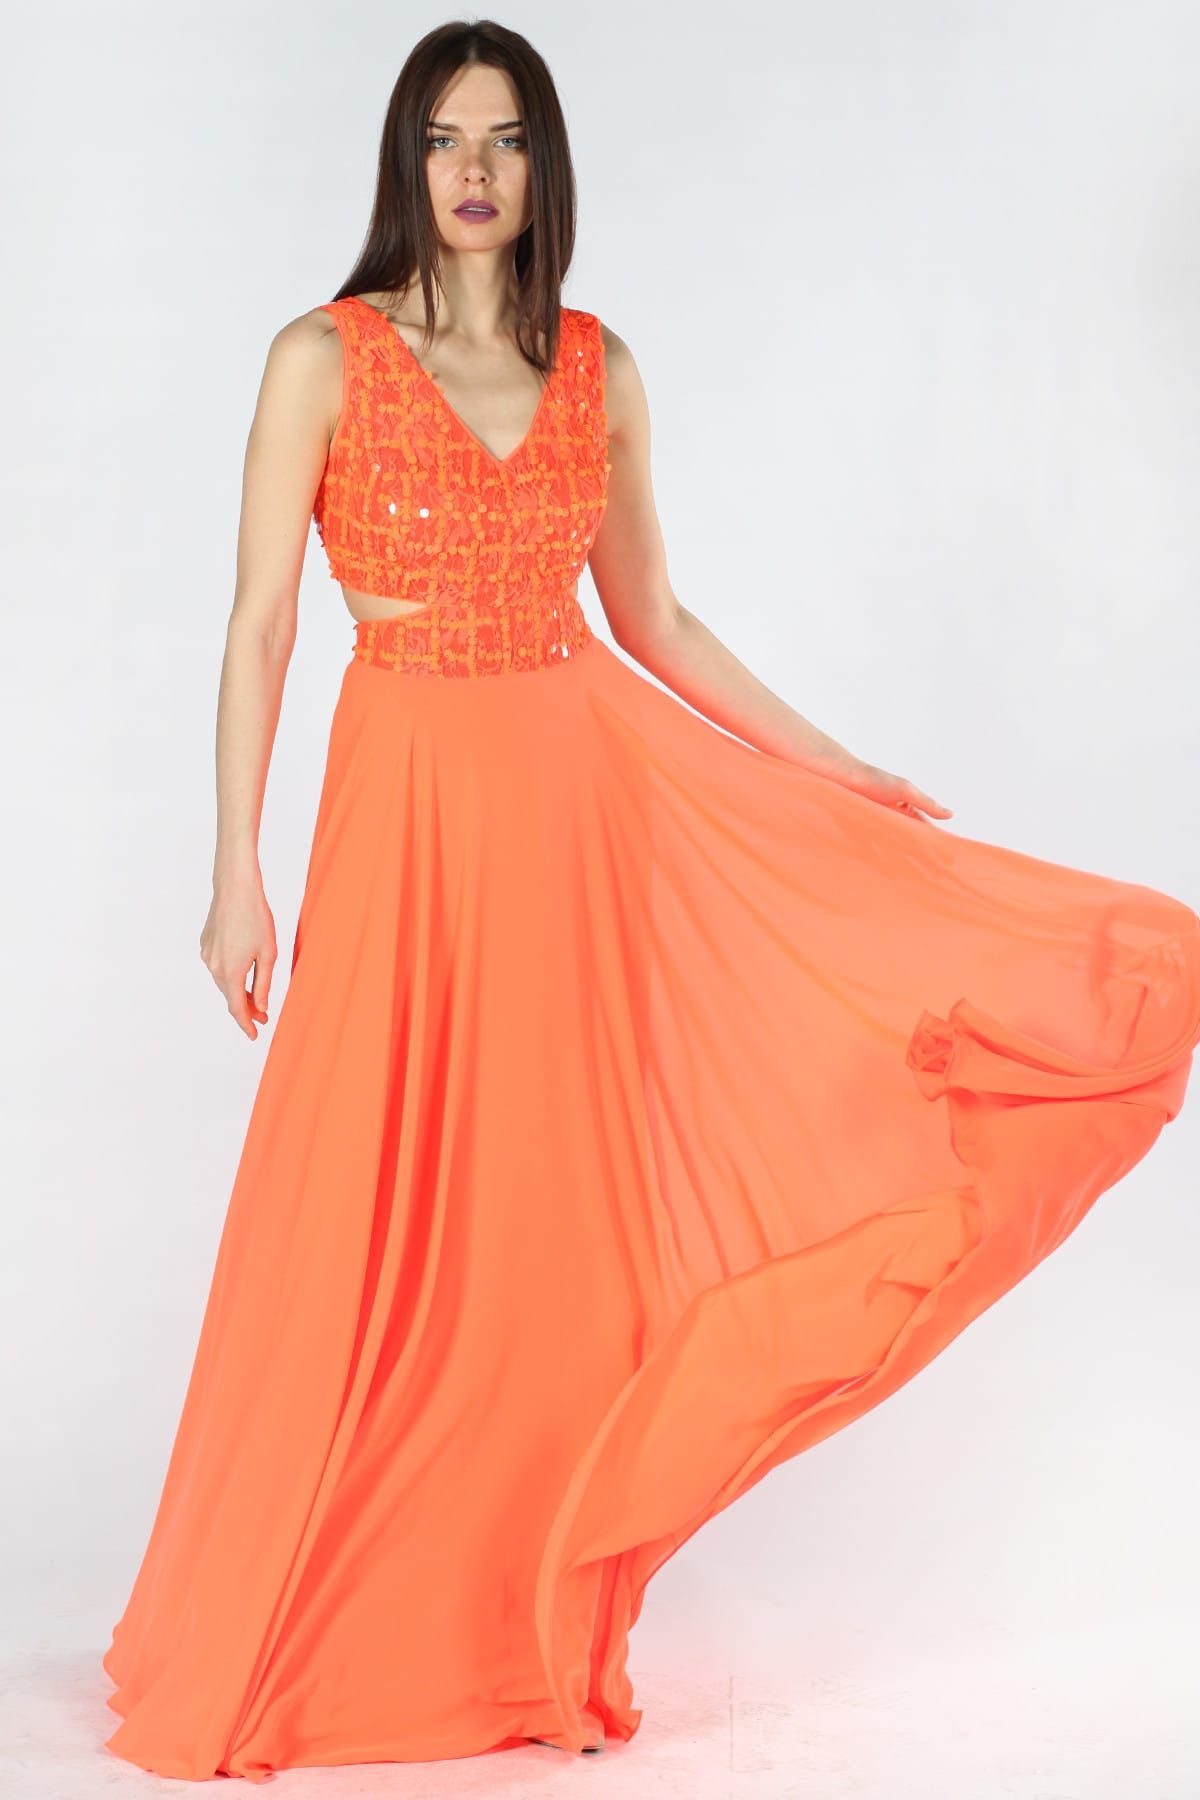 Herry Kadın Neon Oranj Elbise 5838-Jp